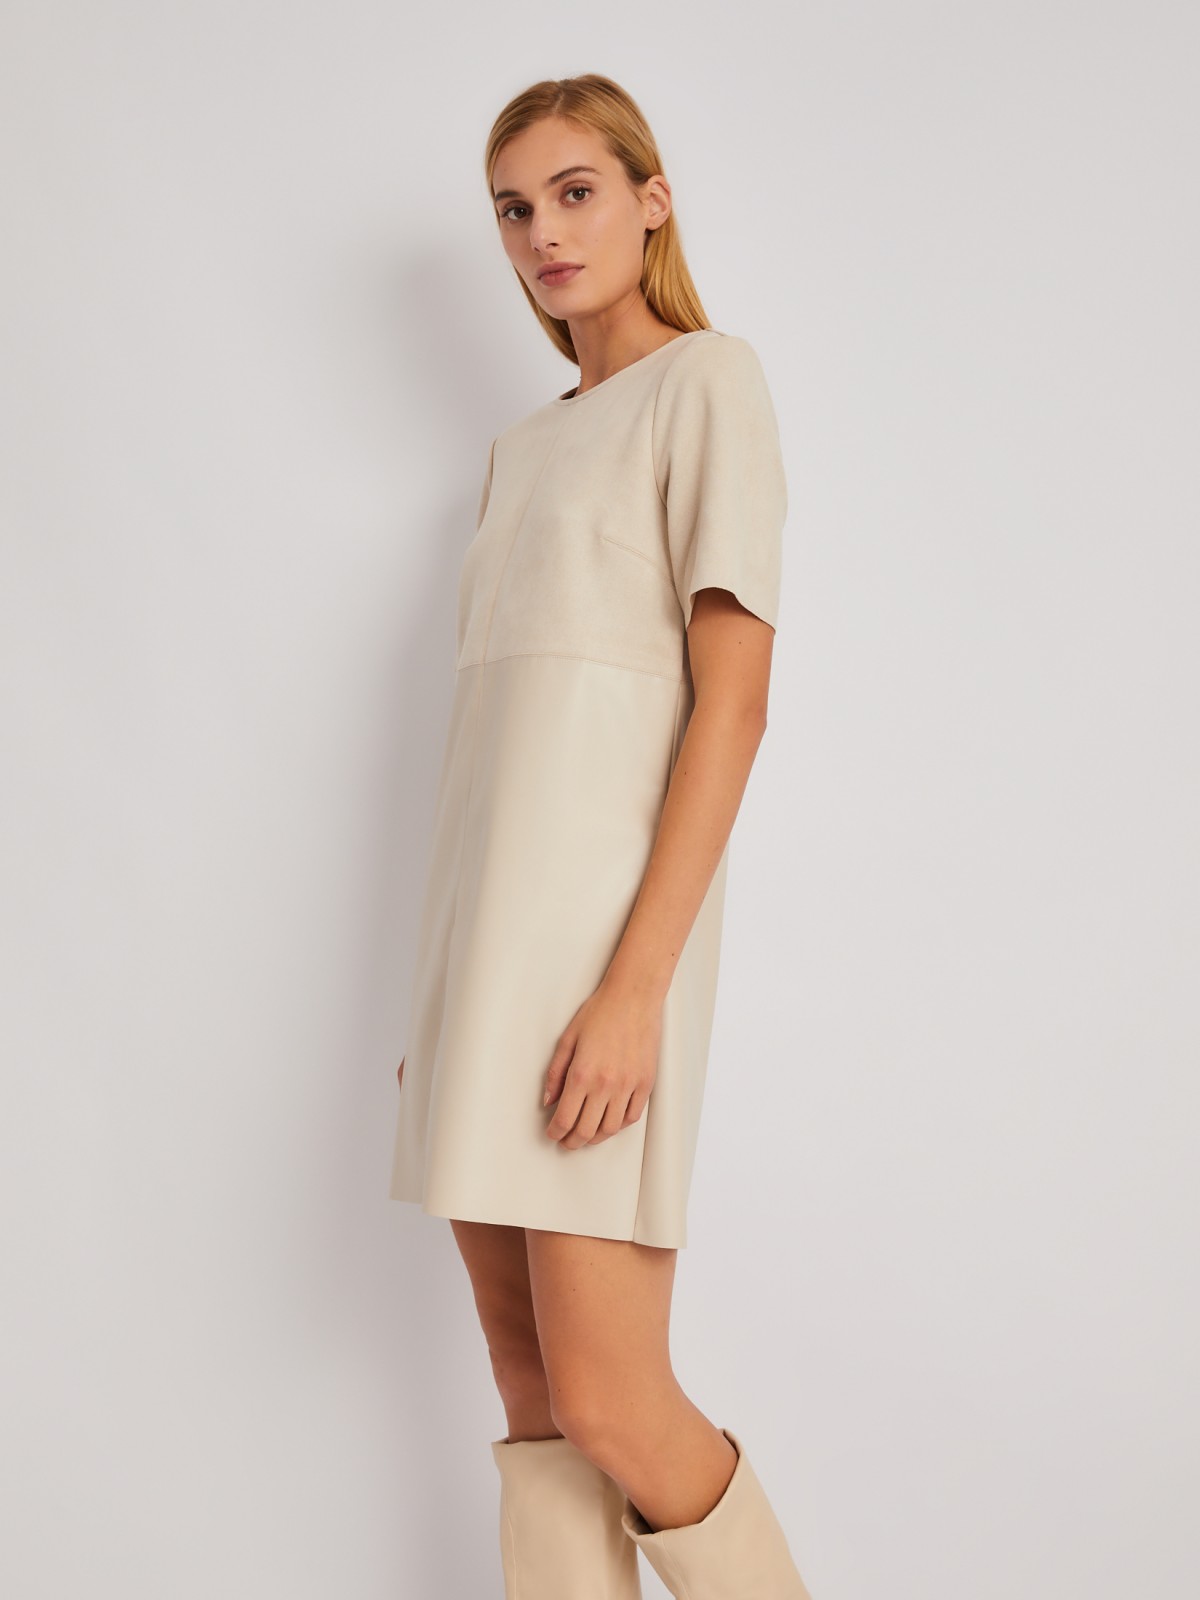 Комбинированное платье-футболка из экокожи и экозамши zolla 024118259163, цвет молоко, размер S - фото 3